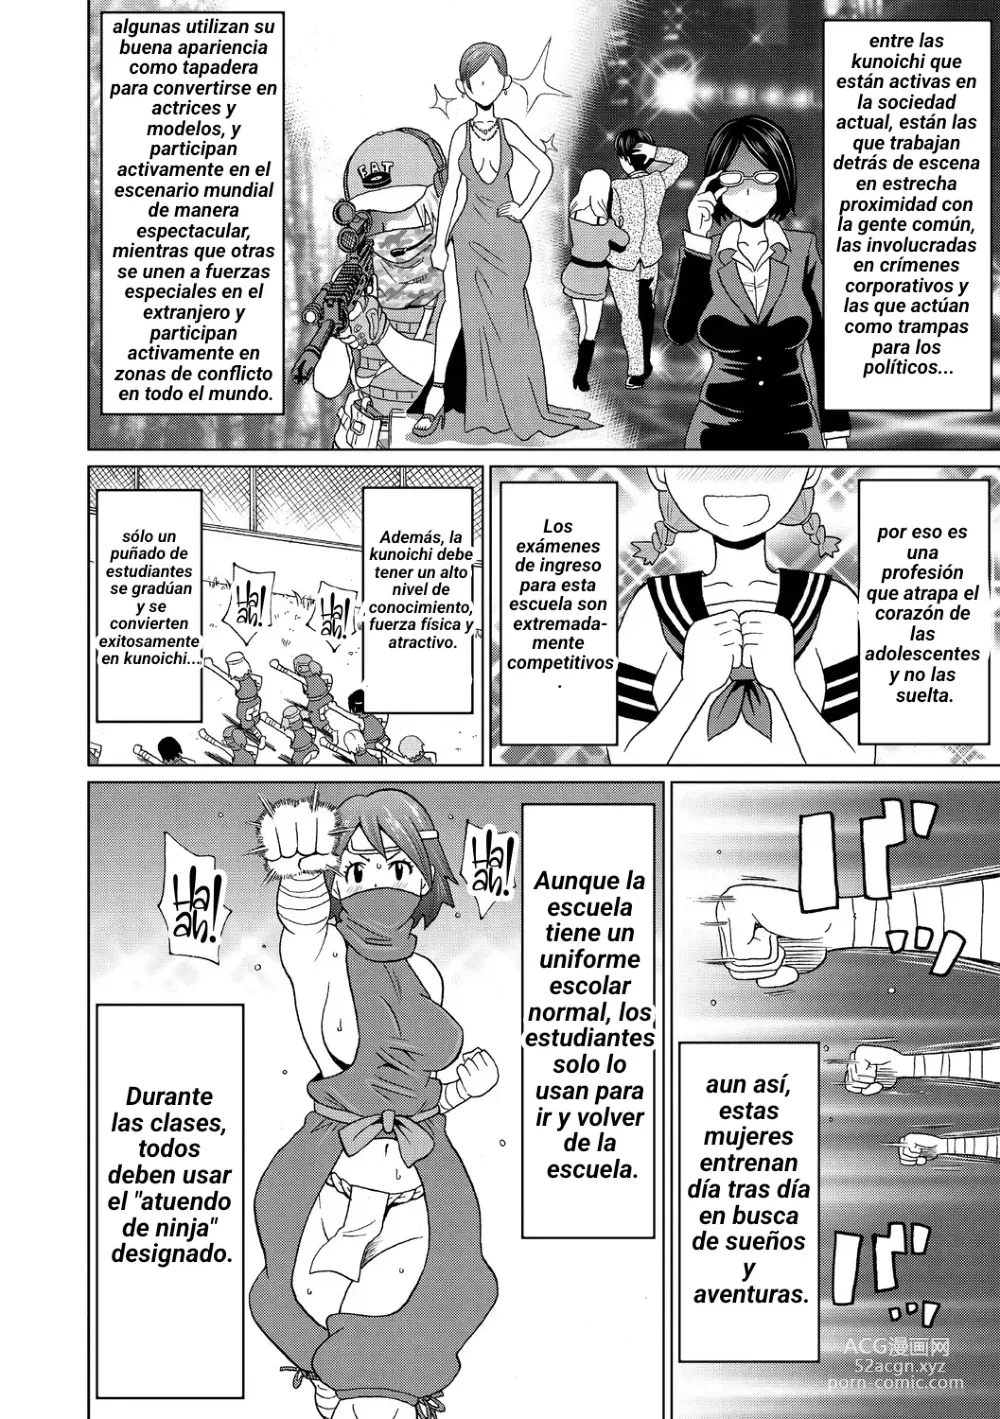 Page 2 of manga Shinmai Kunoichi Shinozaki-san.